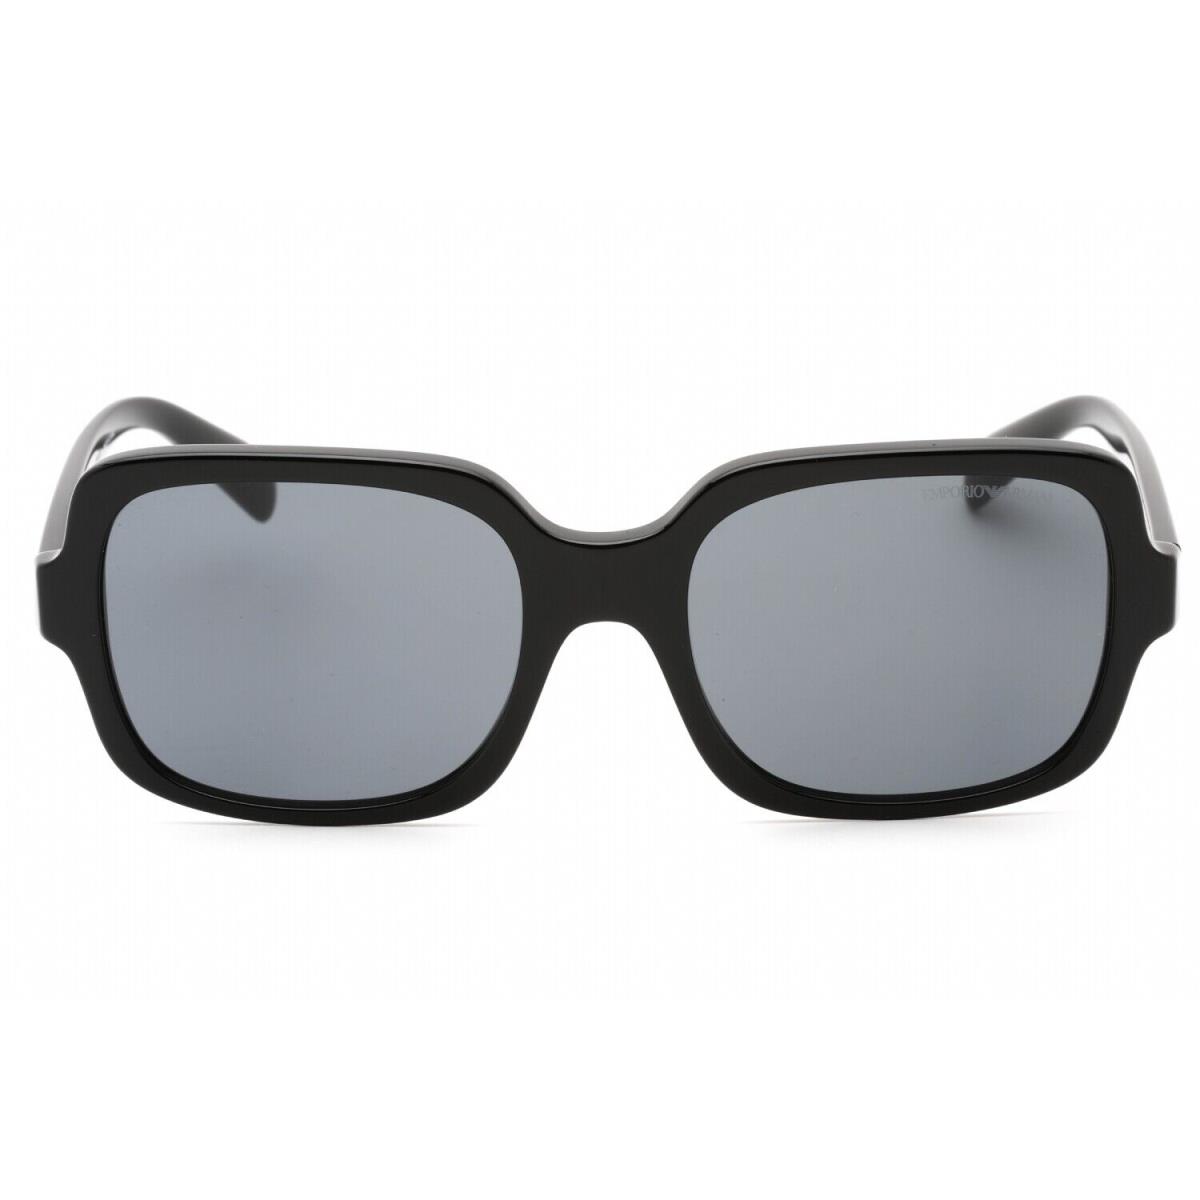 Emporio Armani EA4195-501787-55 Sunglasses Size 55mm 140mm 19mm Black Women